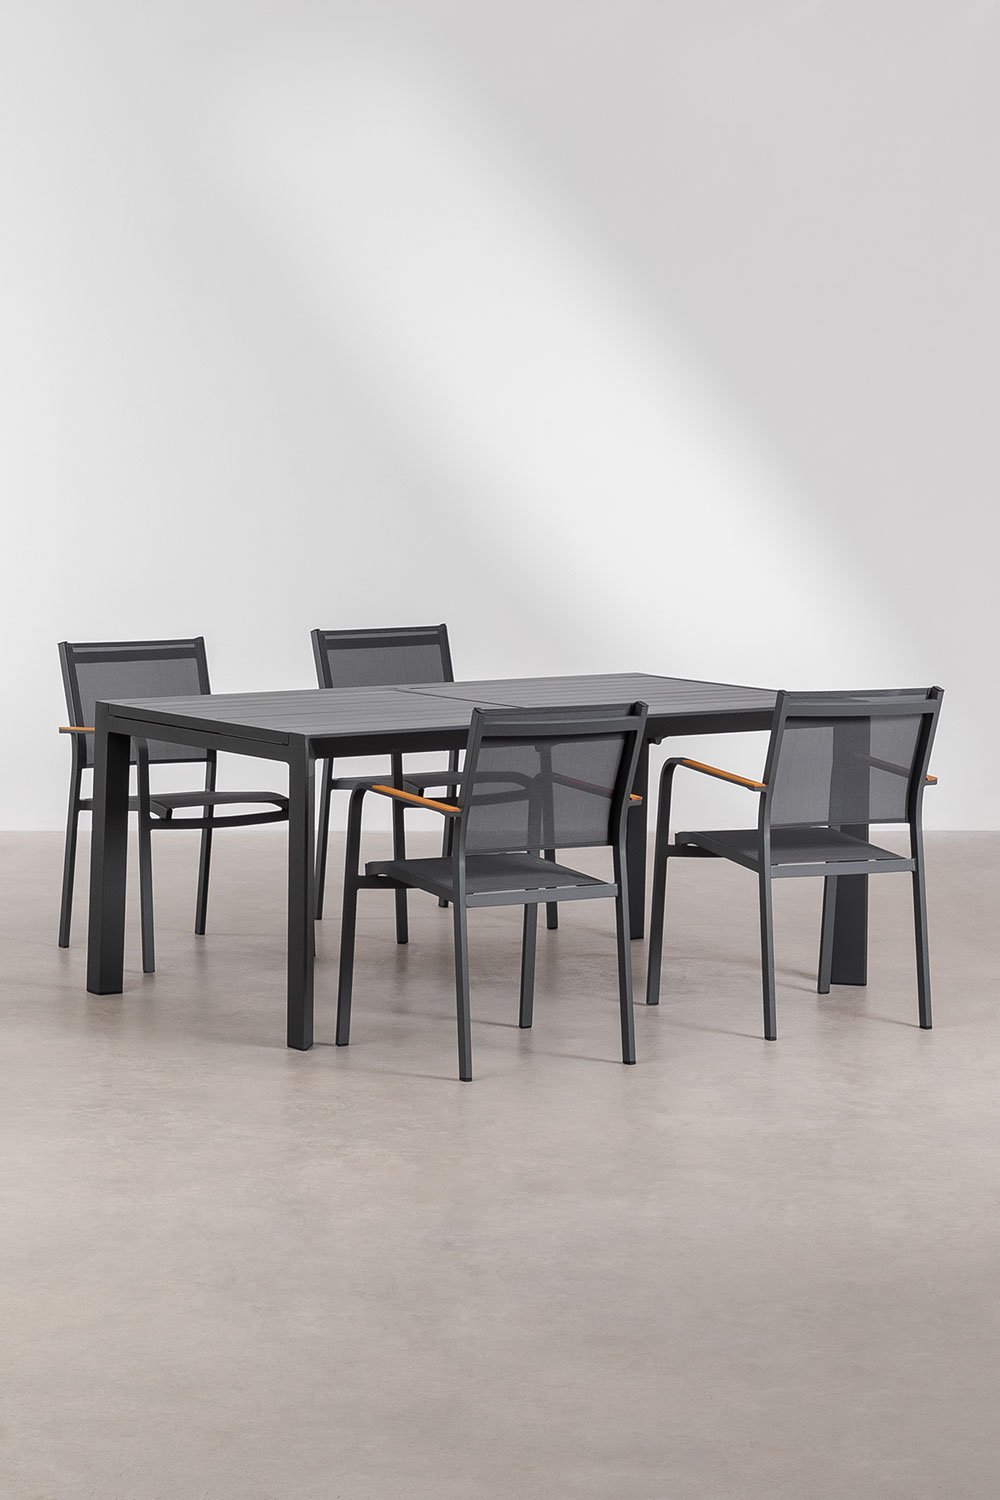 Set aus ausziehbarem rechteckigem Tisch aus Aluminium (180-240x100 cm) Starmi und 4 stapelbaren Gartenstühlen aus Aluminium Arch, Galeriebild 1